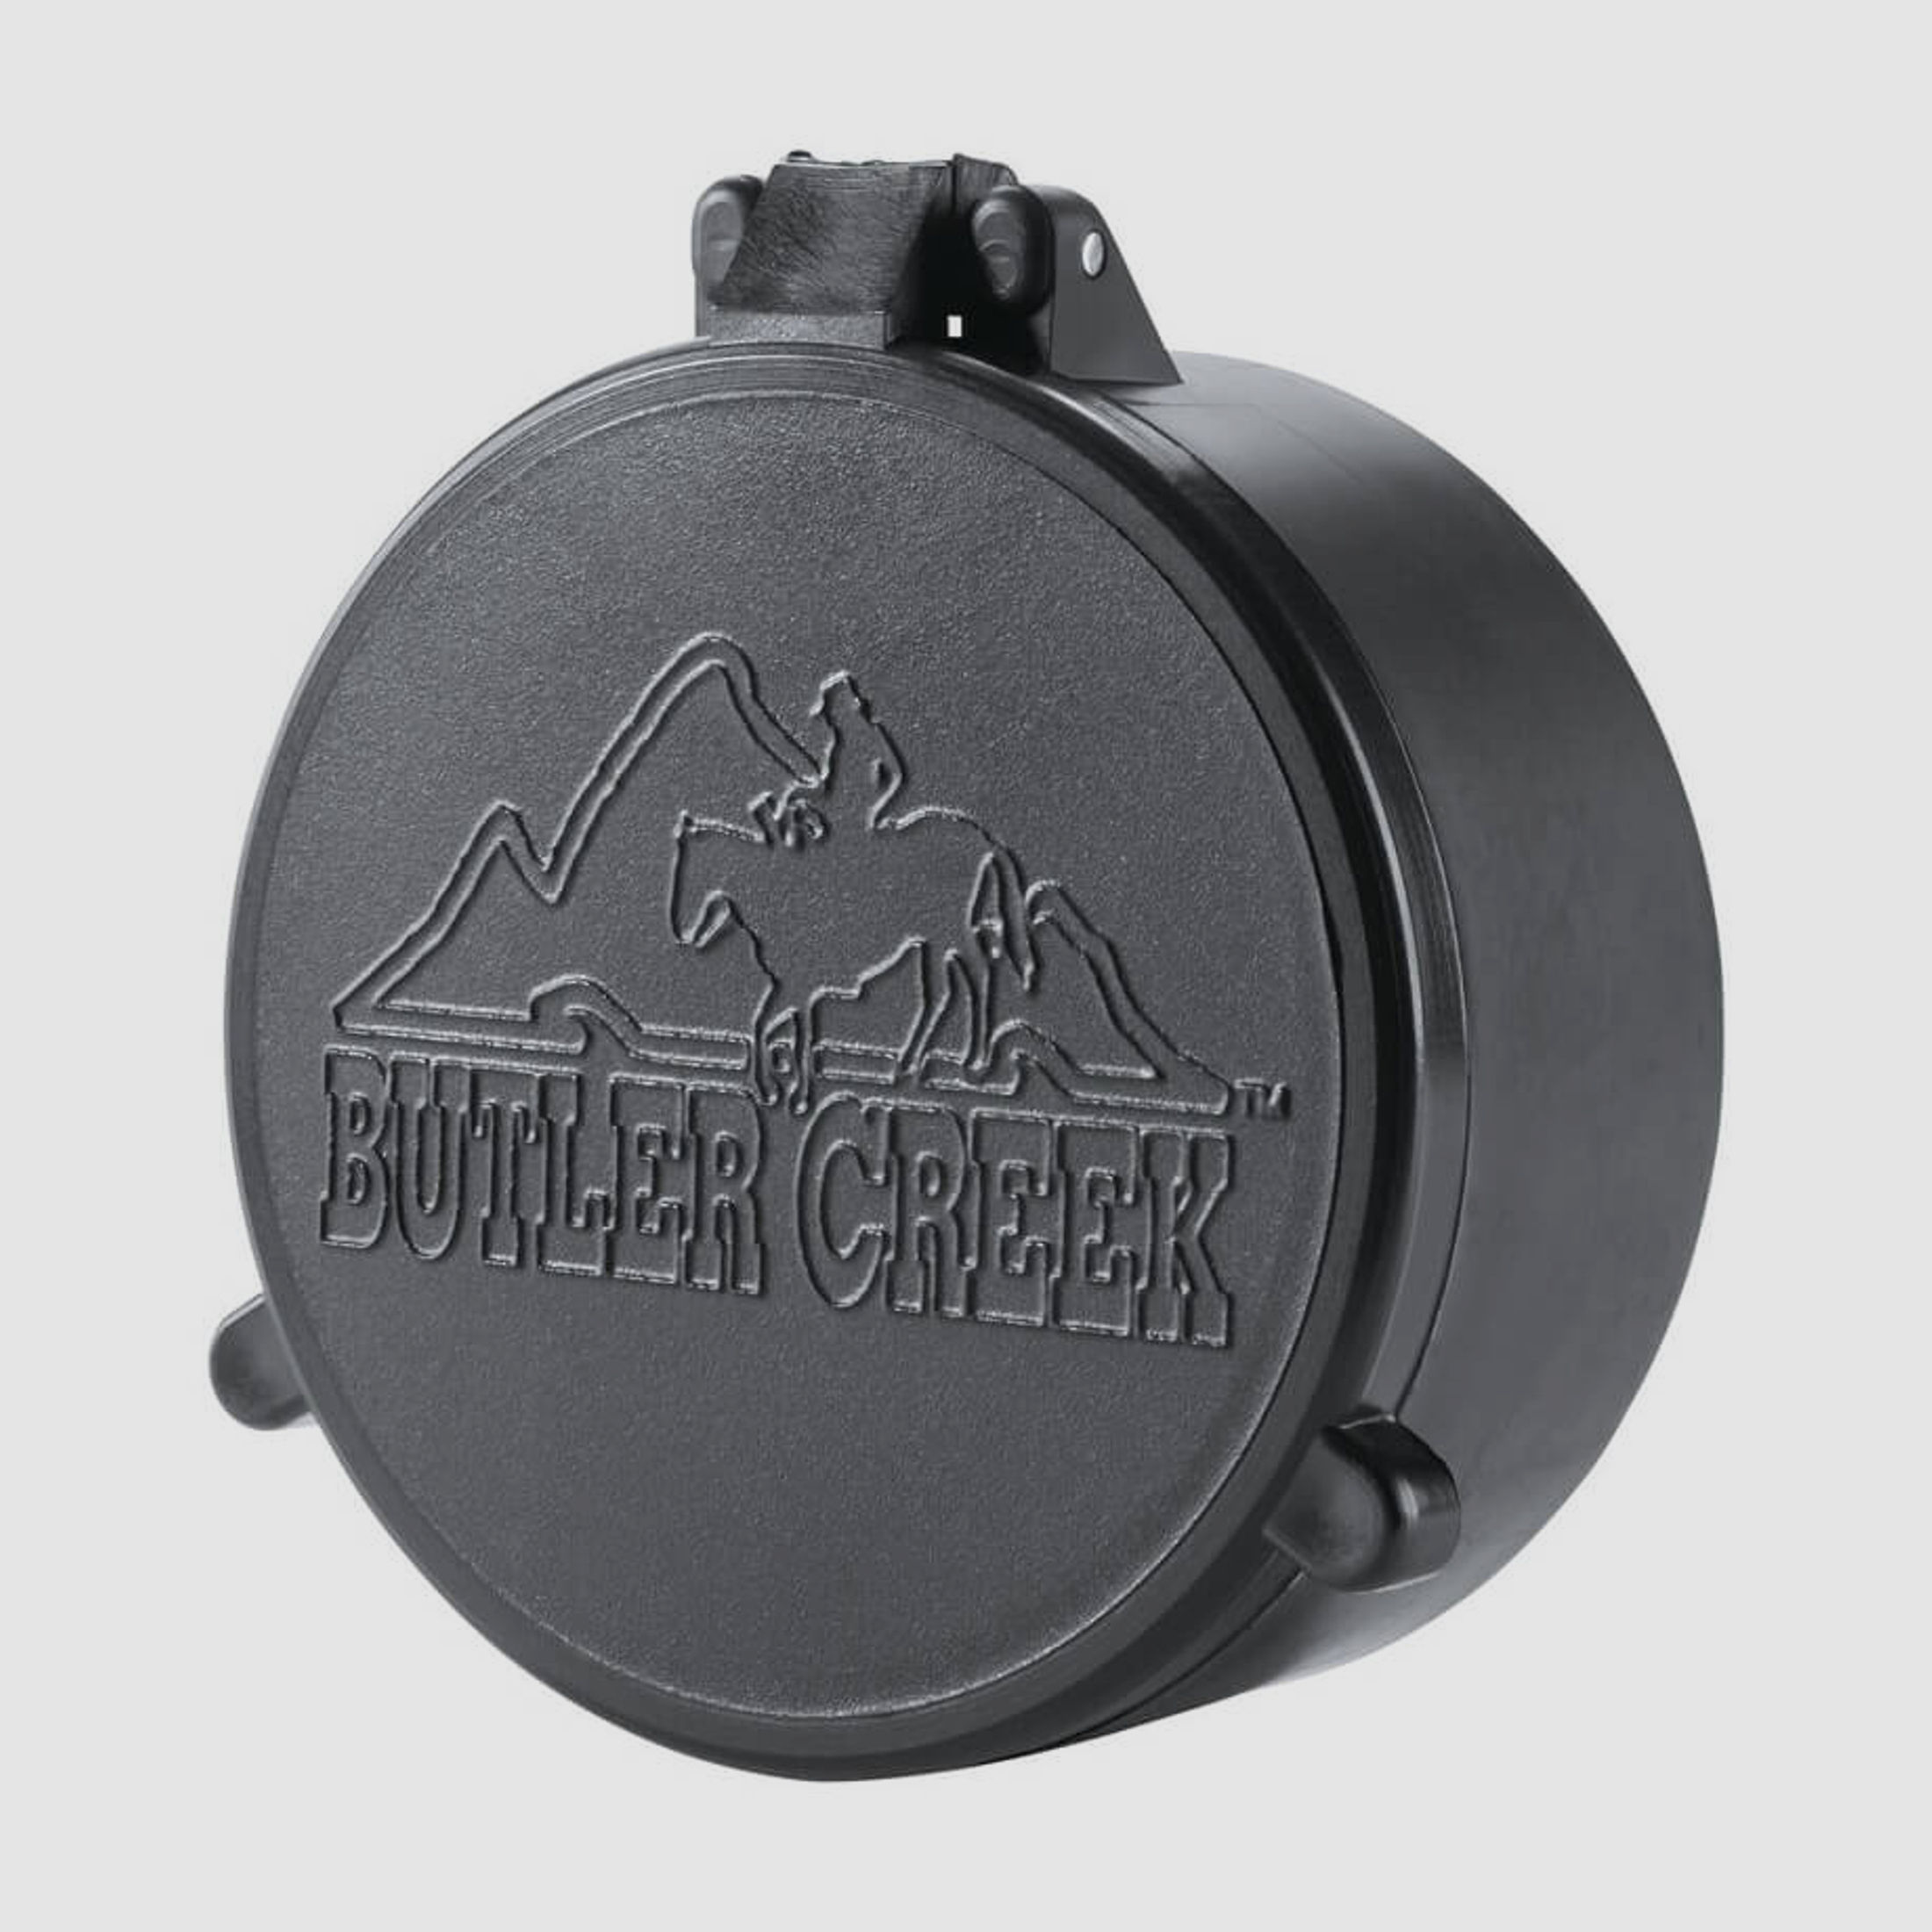 Butler Creek Objektiv Schutzkappe - 59,9mm